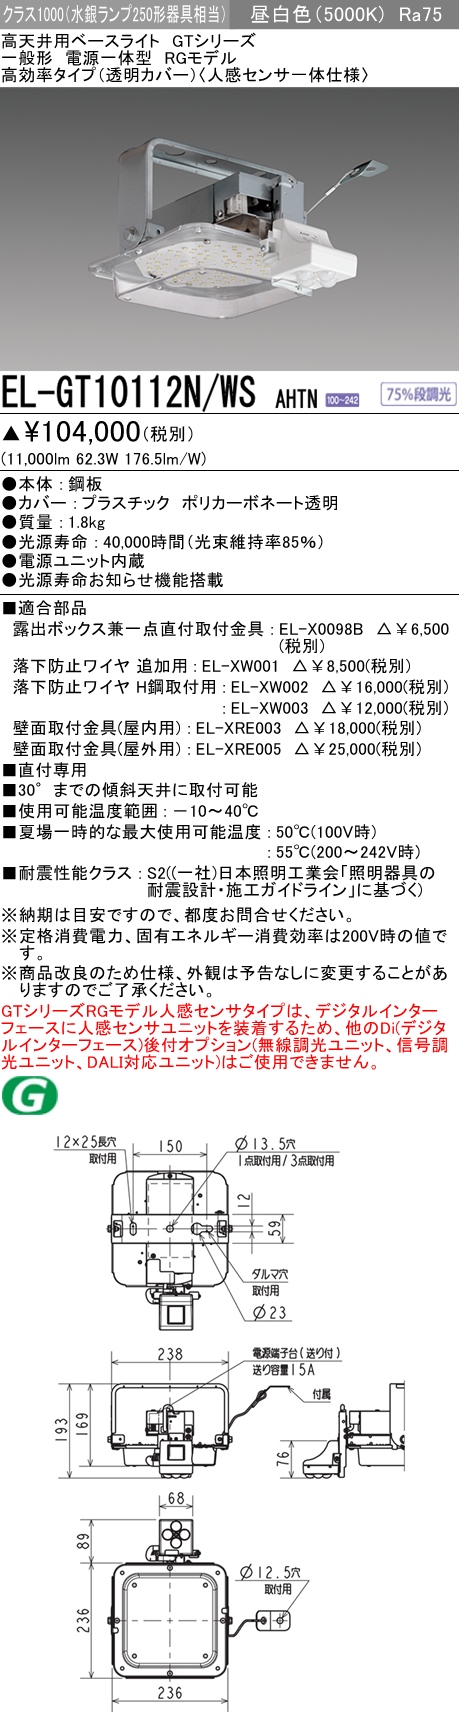 三菱 三菱 EL-GT10110N/M AHTN 高天井用ベースライト(GTシリーズ) 固定